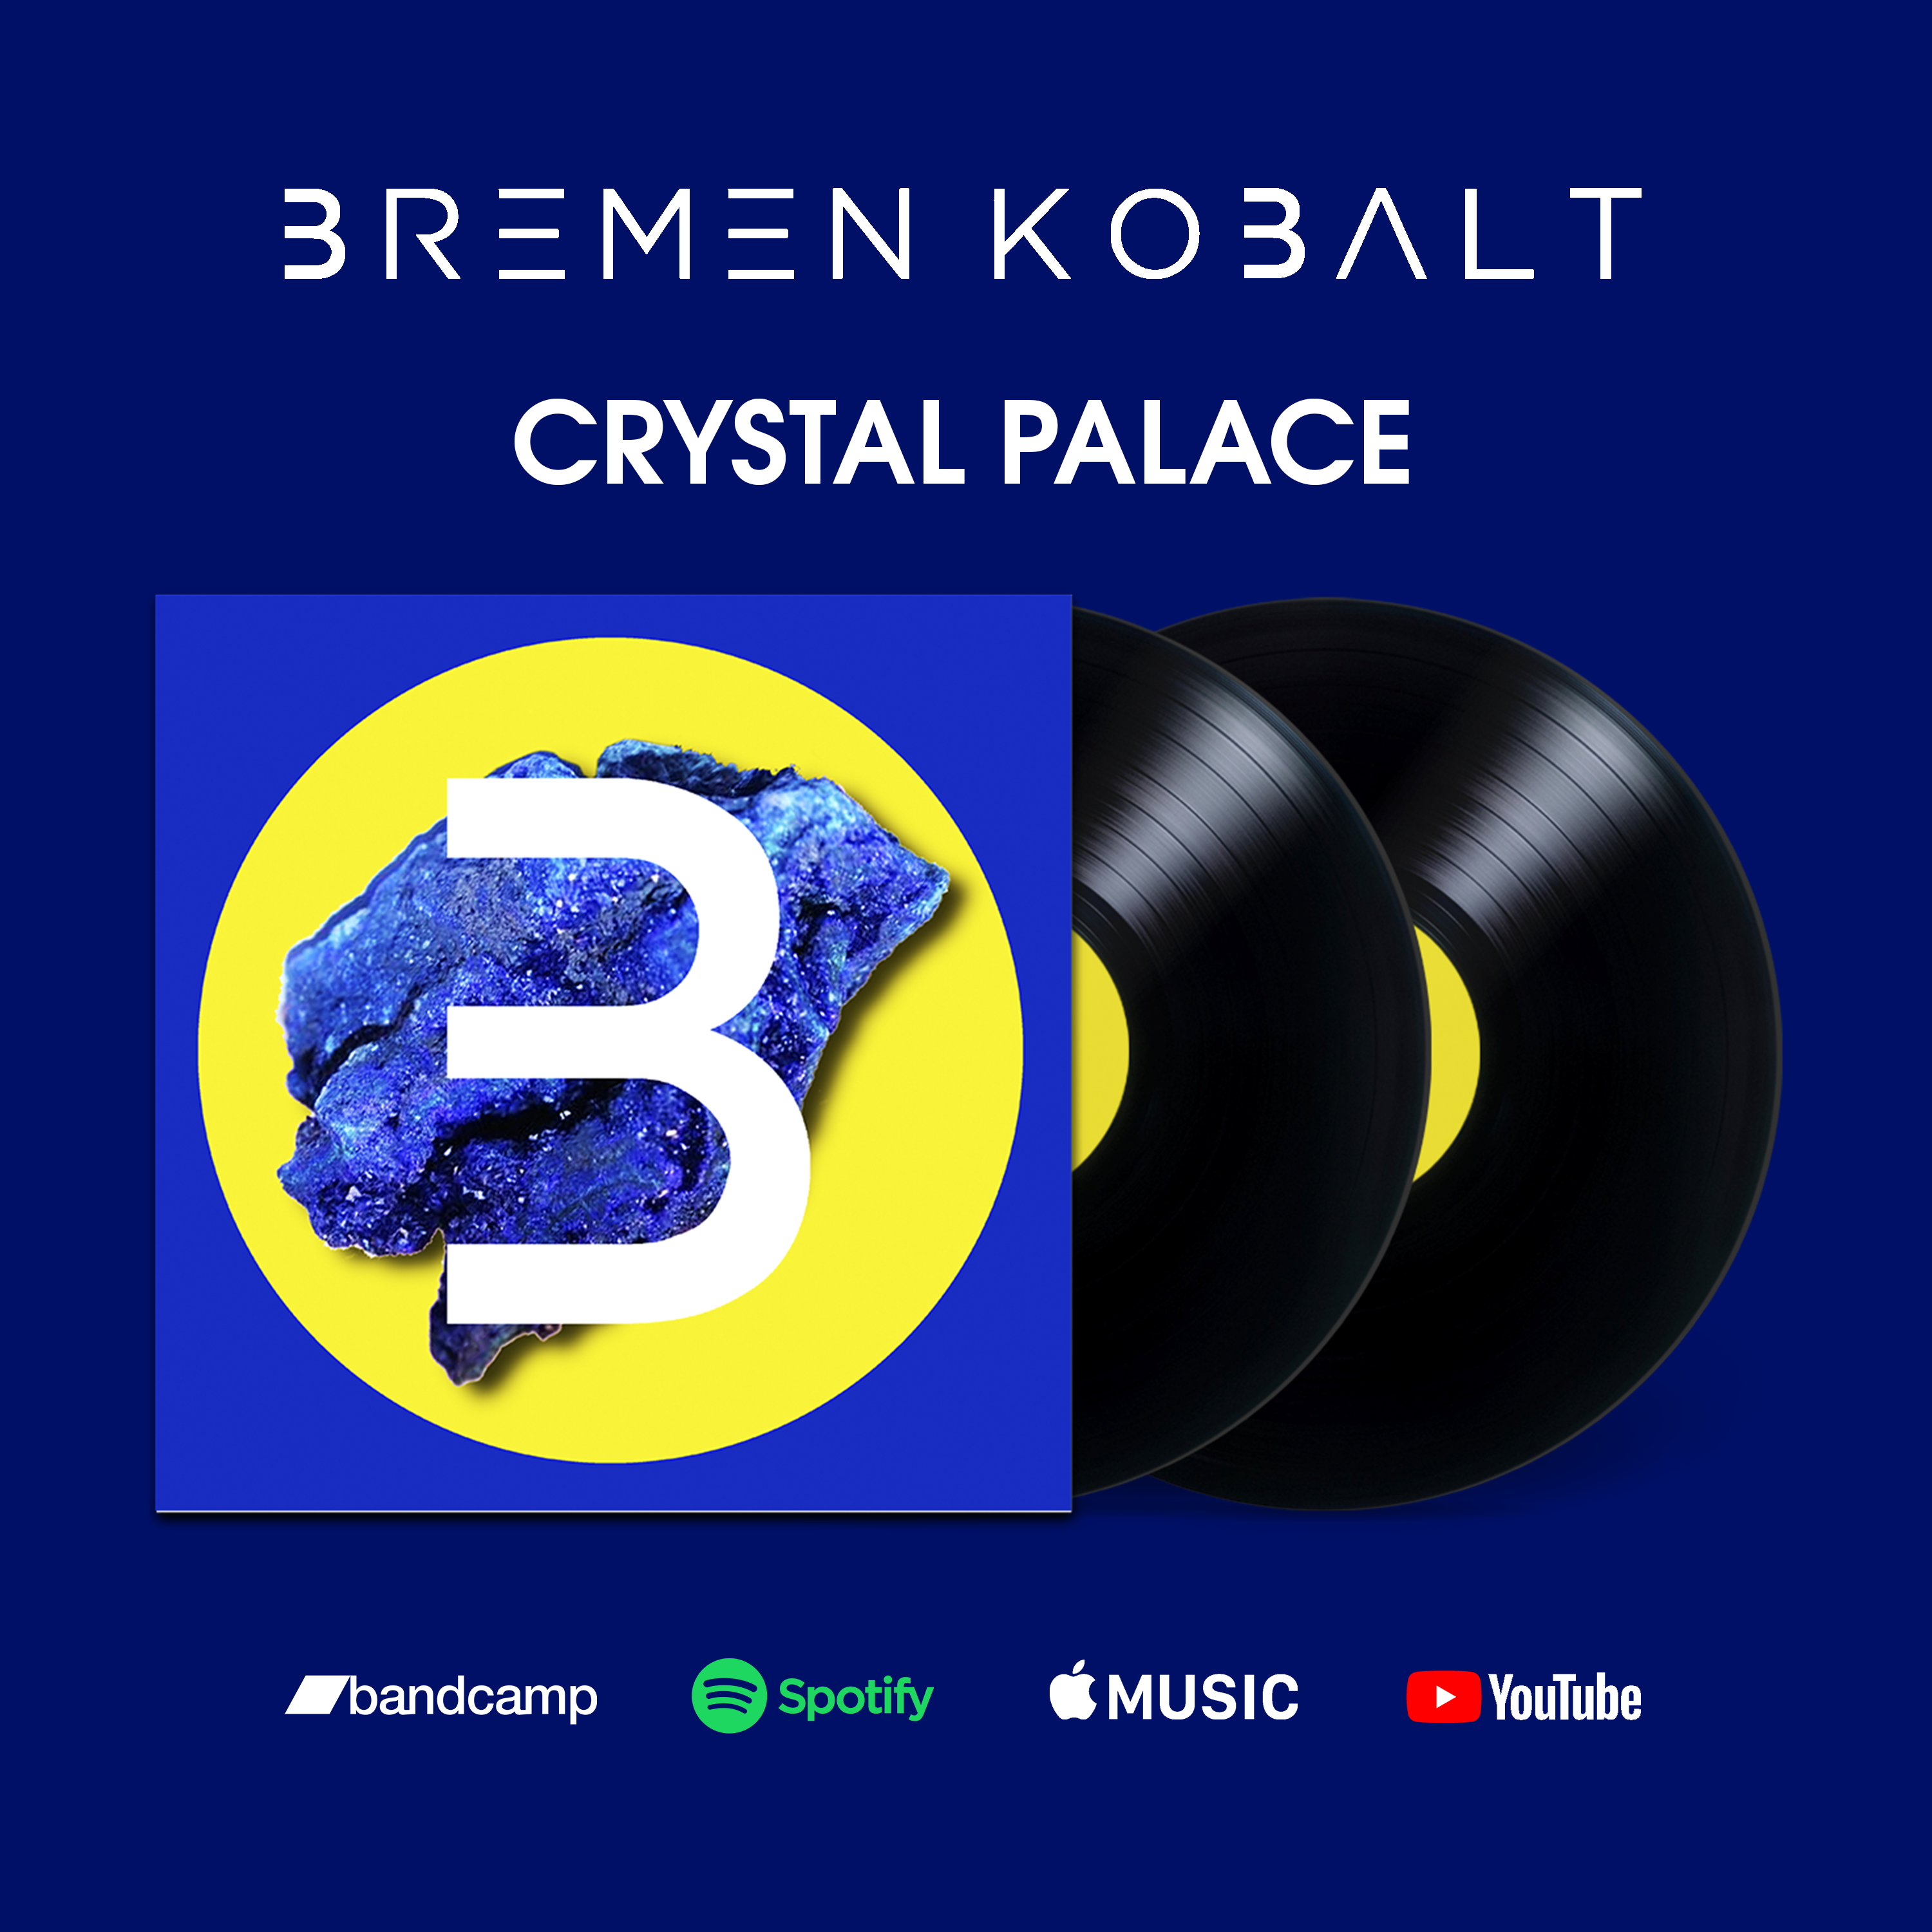 El álbum “Crystal Palace” es el primer lanzamiento de Bremen Kobalt, un artista Live Performance.